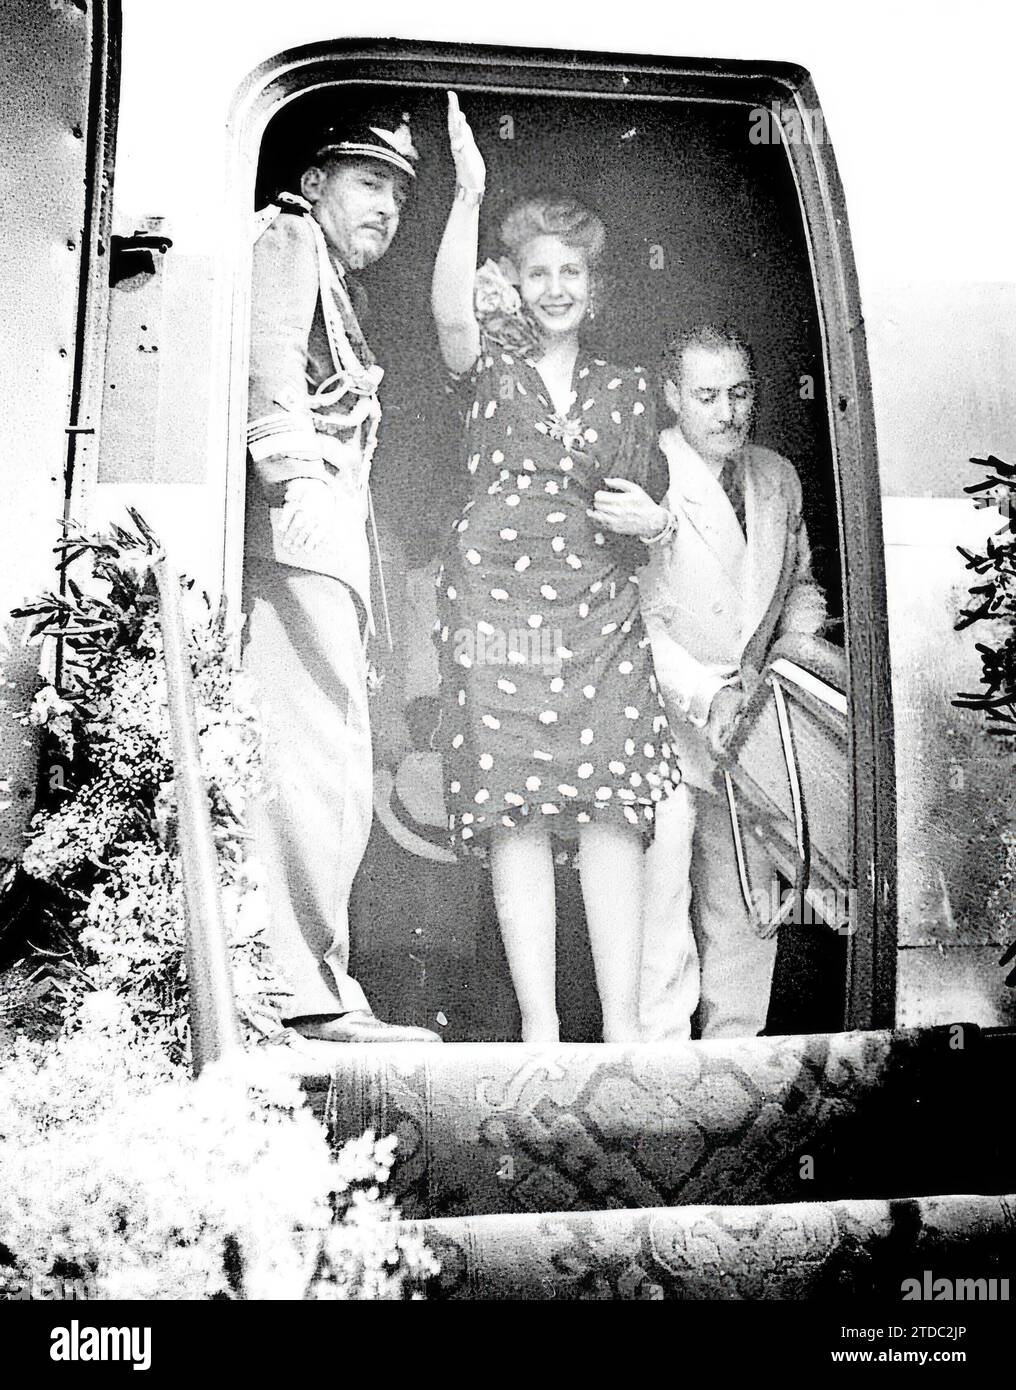 06/26/1947. Eva Duarte de Perón dice addio alla Spagna prima di partire per Roma. Foto: Brangulí. Crediti: Album / Archivo ABC / Josep Brangulí Foto Stock